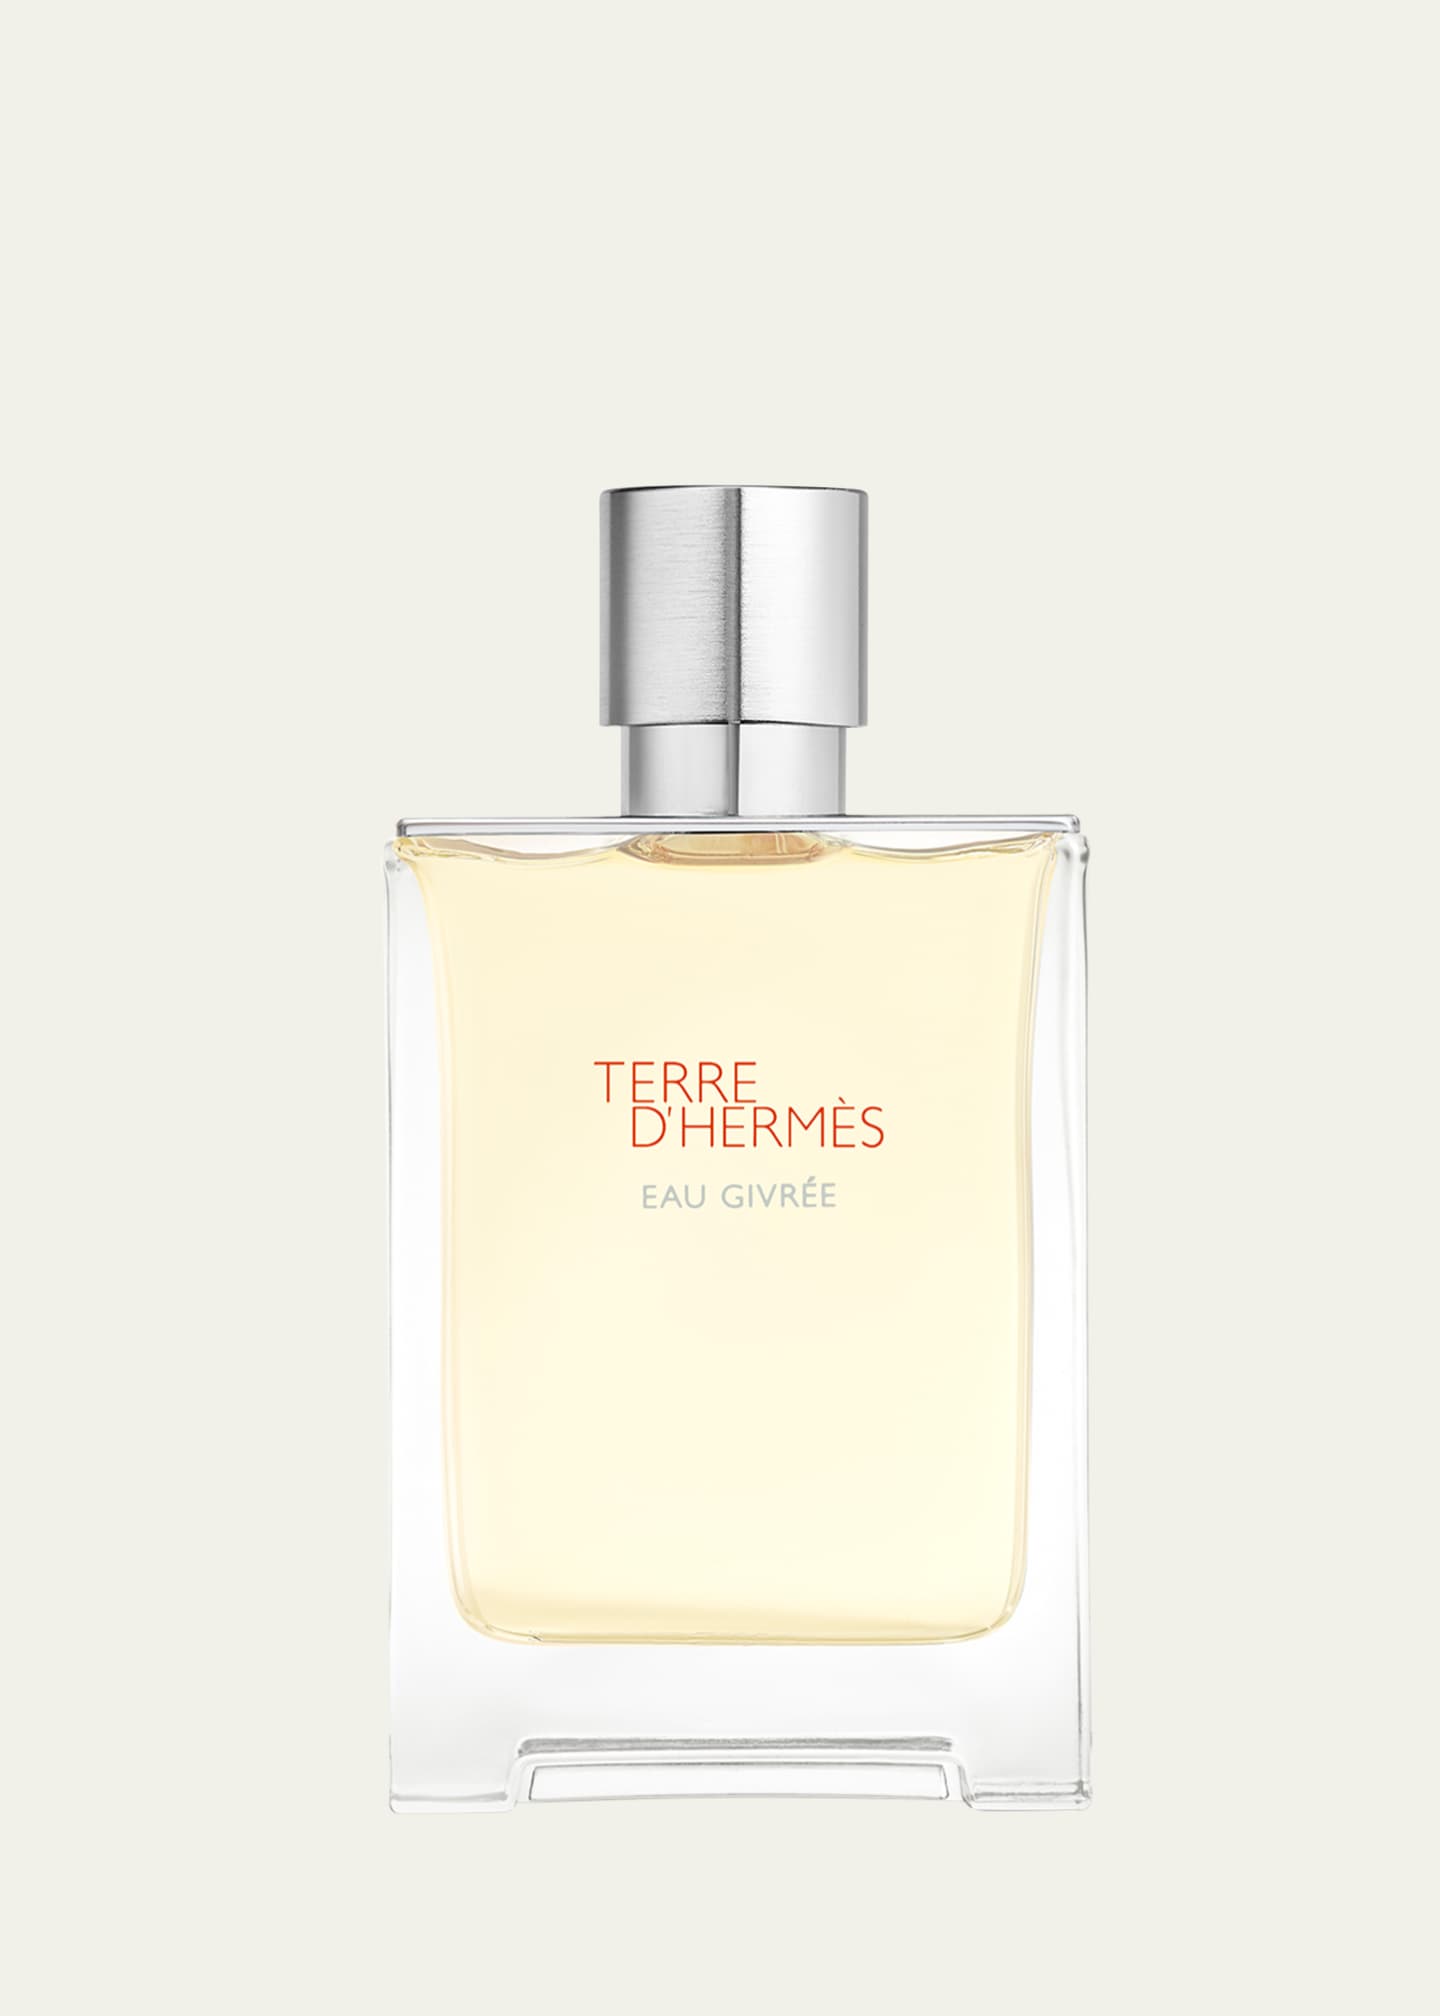 Hermès Terre d’Hermes Eau Givree Eau de Parfum, 3.4 oz. - Bergdorf Goodman